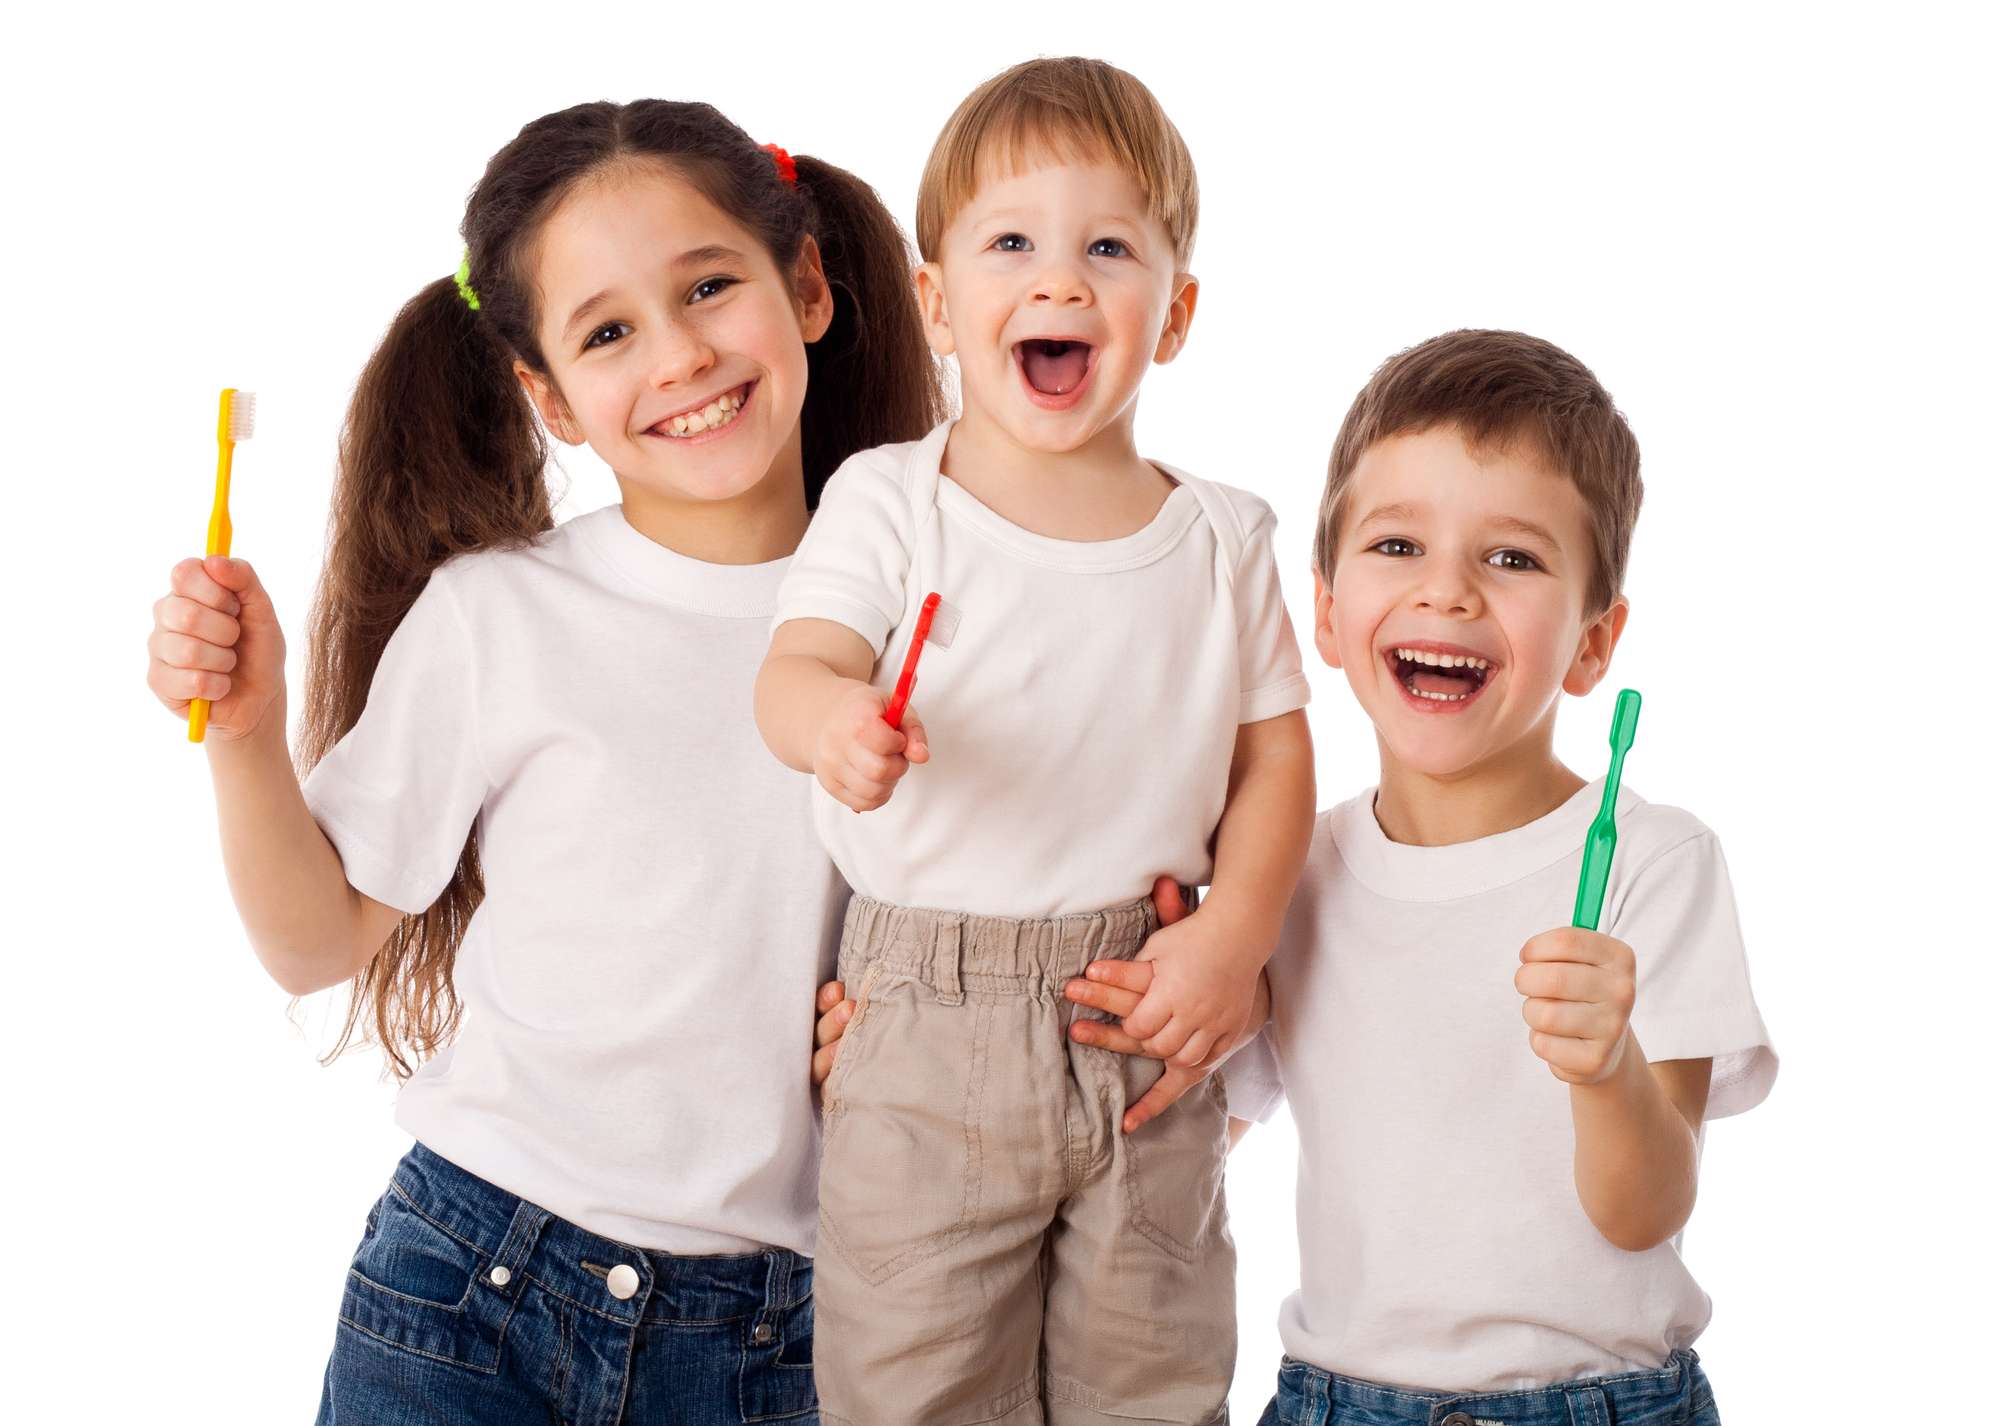 טיפולי שיניים לילדים - ד"ר אבלין ושלר' רופאת שיניים המתמקדת בטיפול בחרדה דנטלית בילדים ומתבגרים